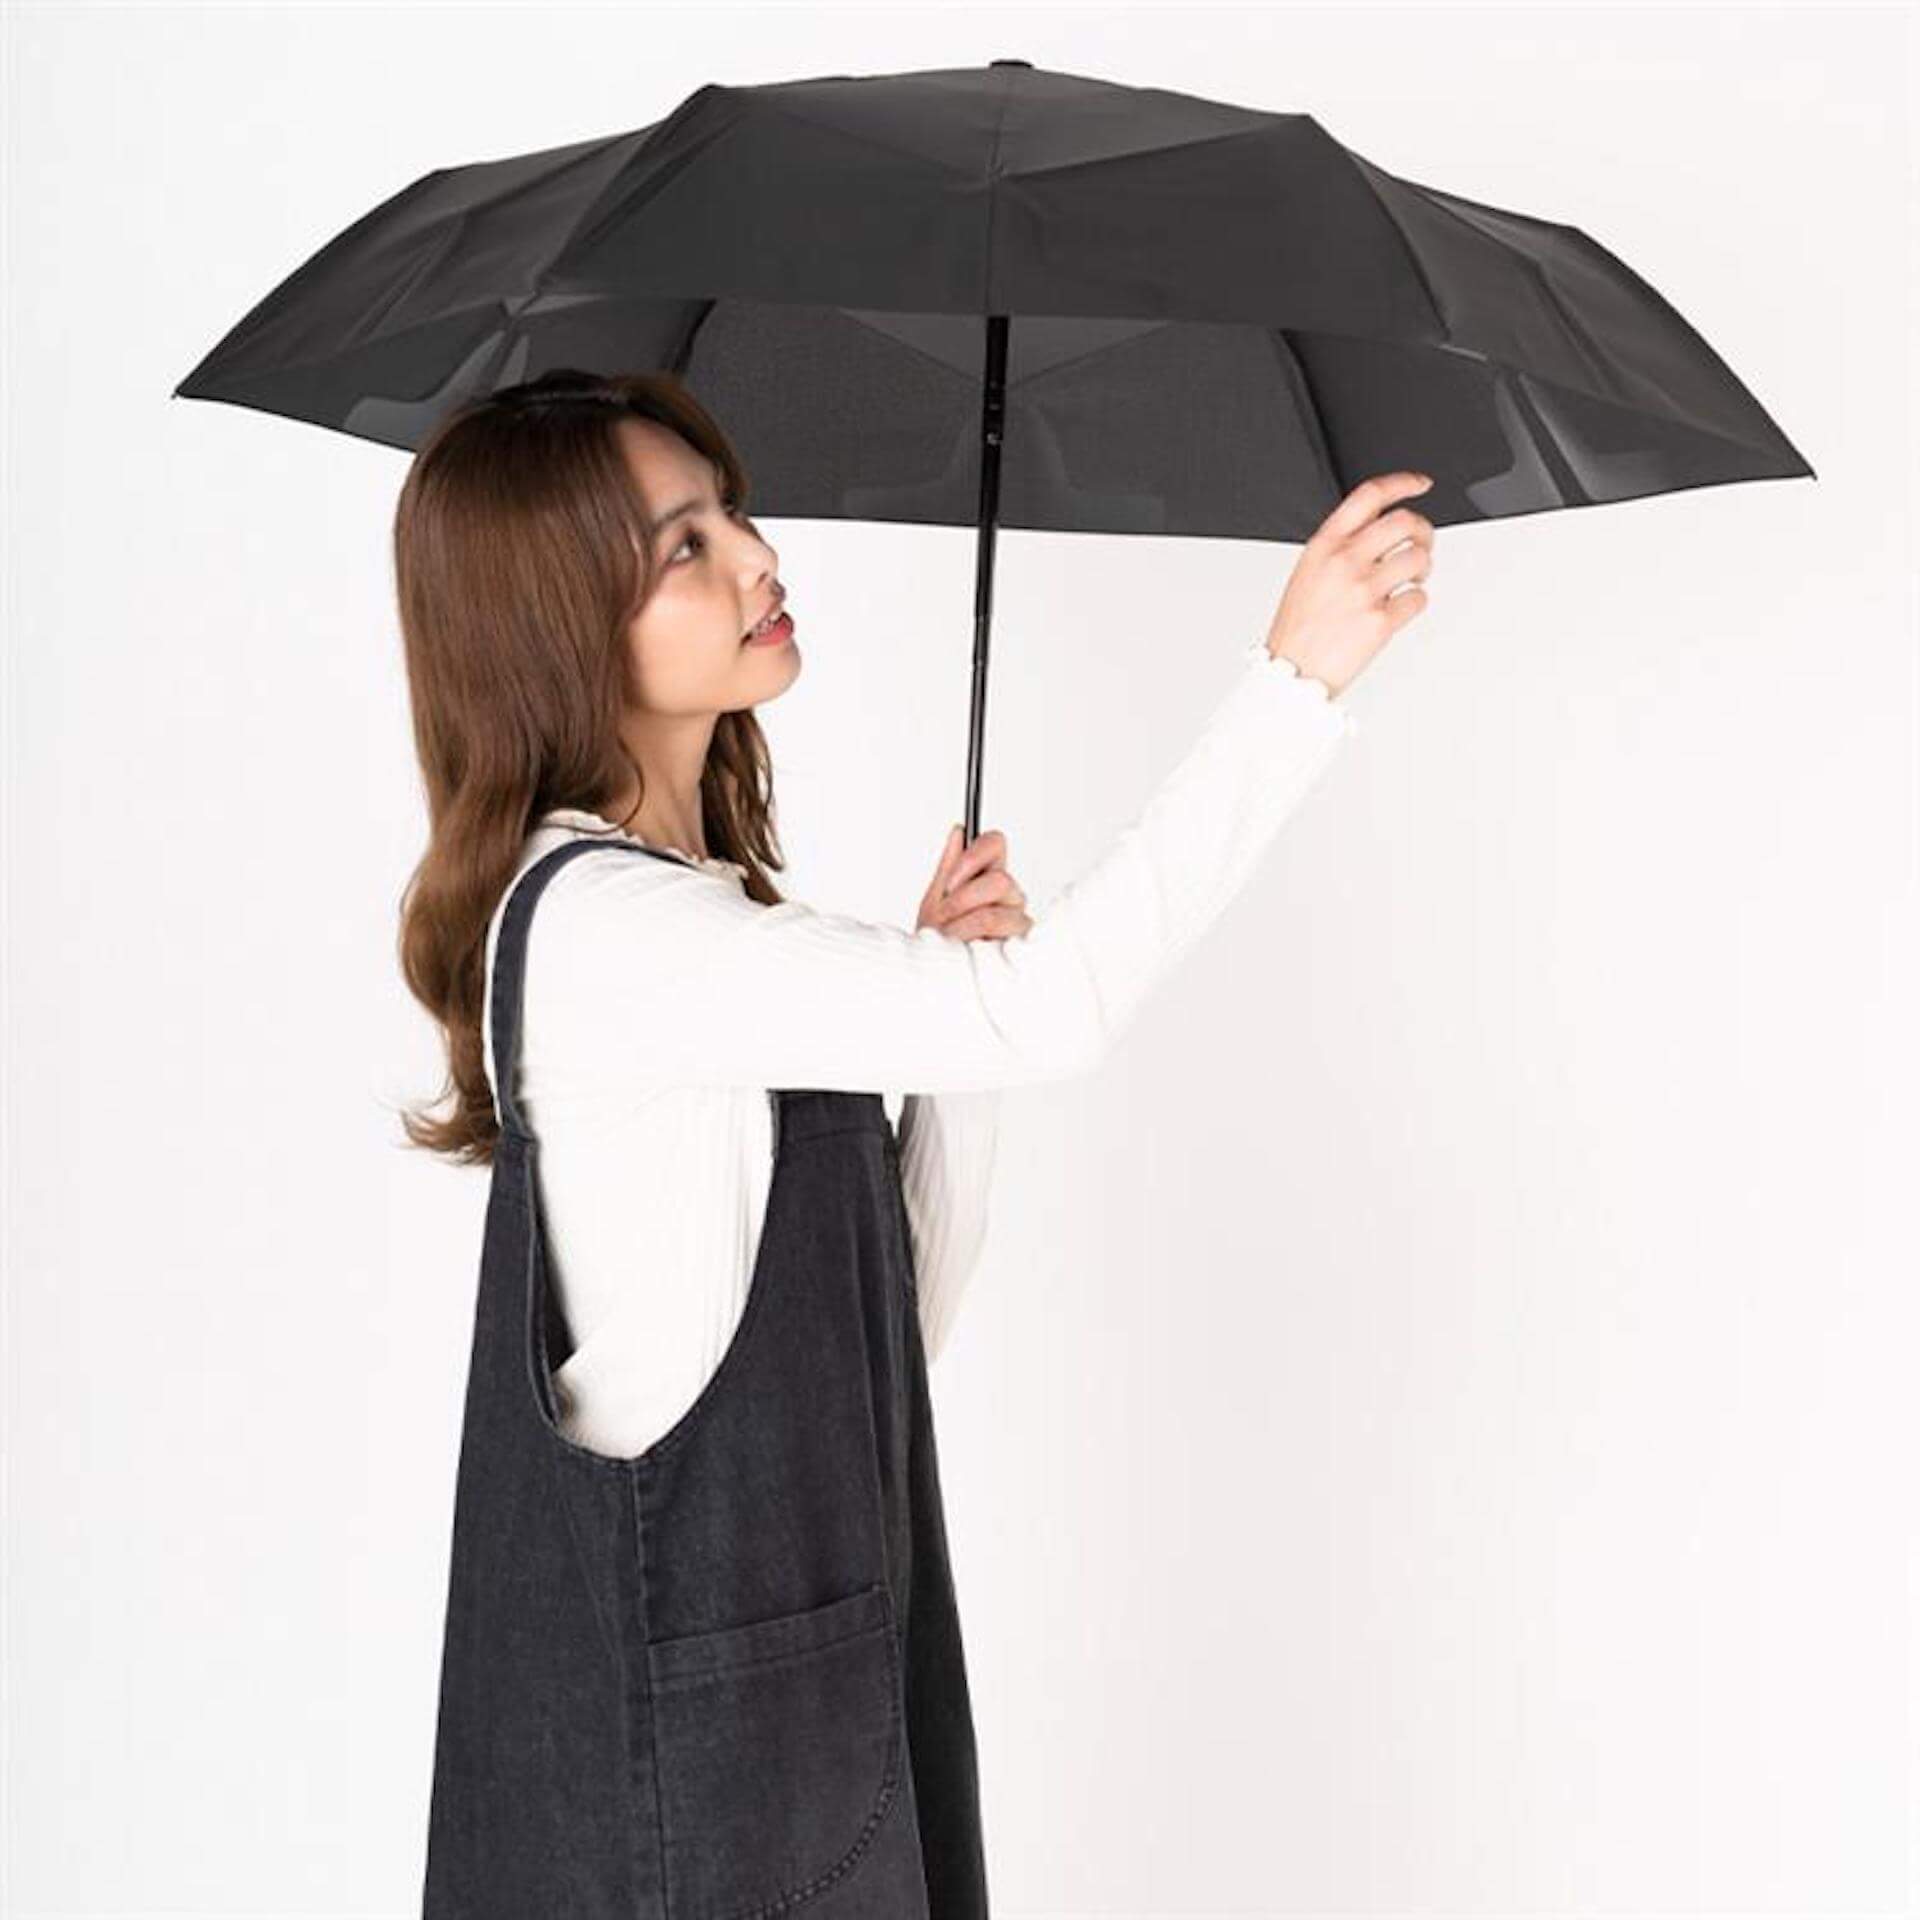 ソーシャルディスタンス確保や熱中症対策などができる最新機能を備えた傘がロフトにて展開中！新作をご紹介 lf200703_umbrella_07